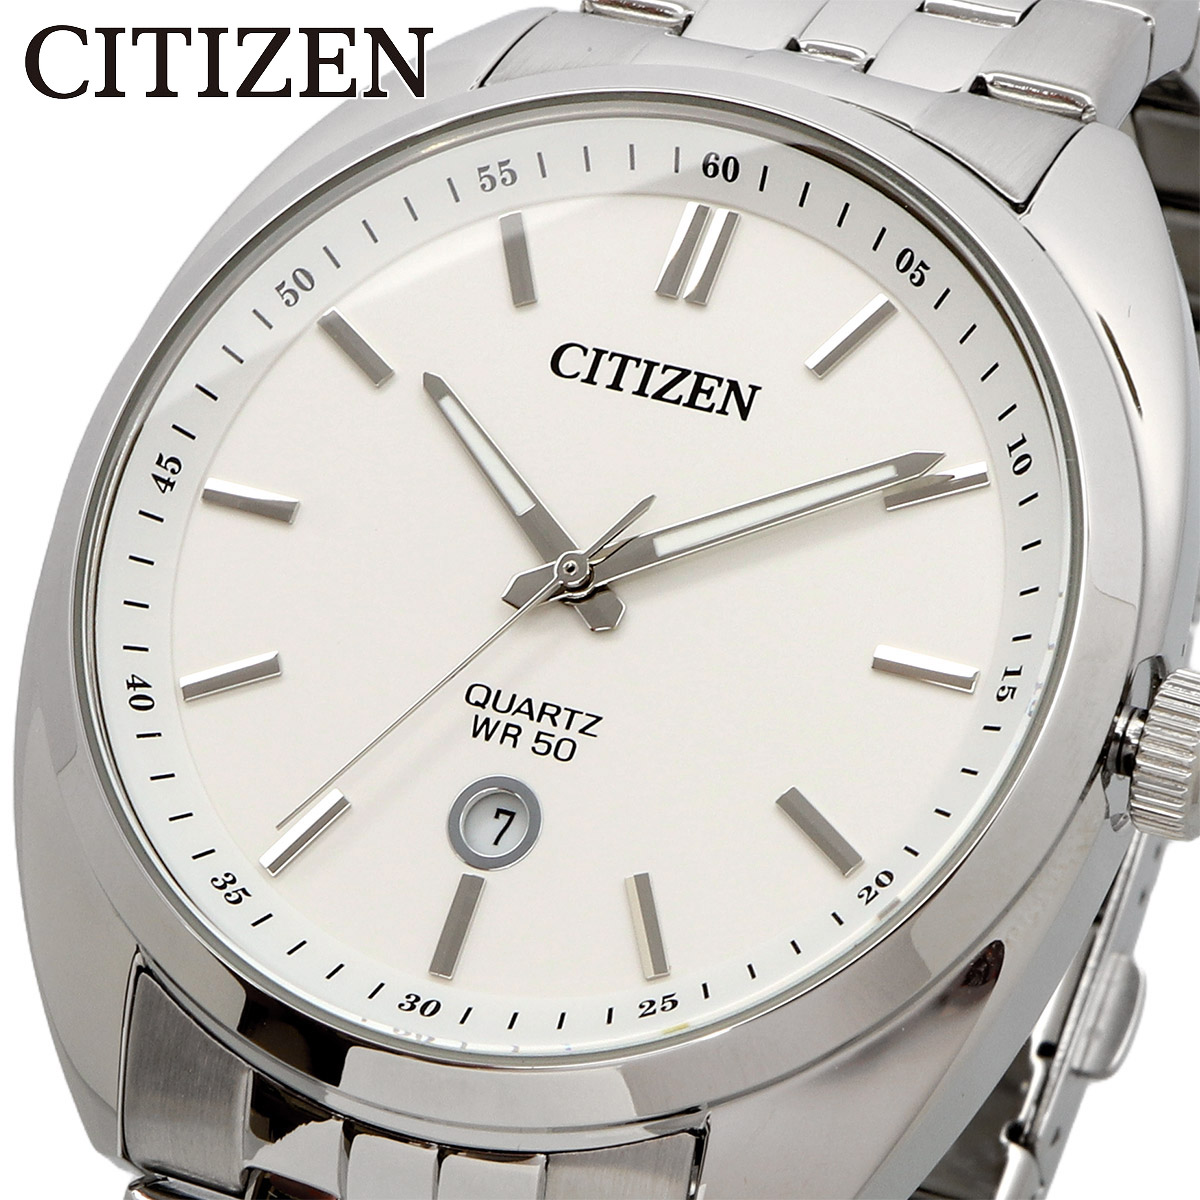 CITIZEN シチズン 腕時計 メンズ 海外モデル クォーツ ビジネス カジュアル  BI5090-50A